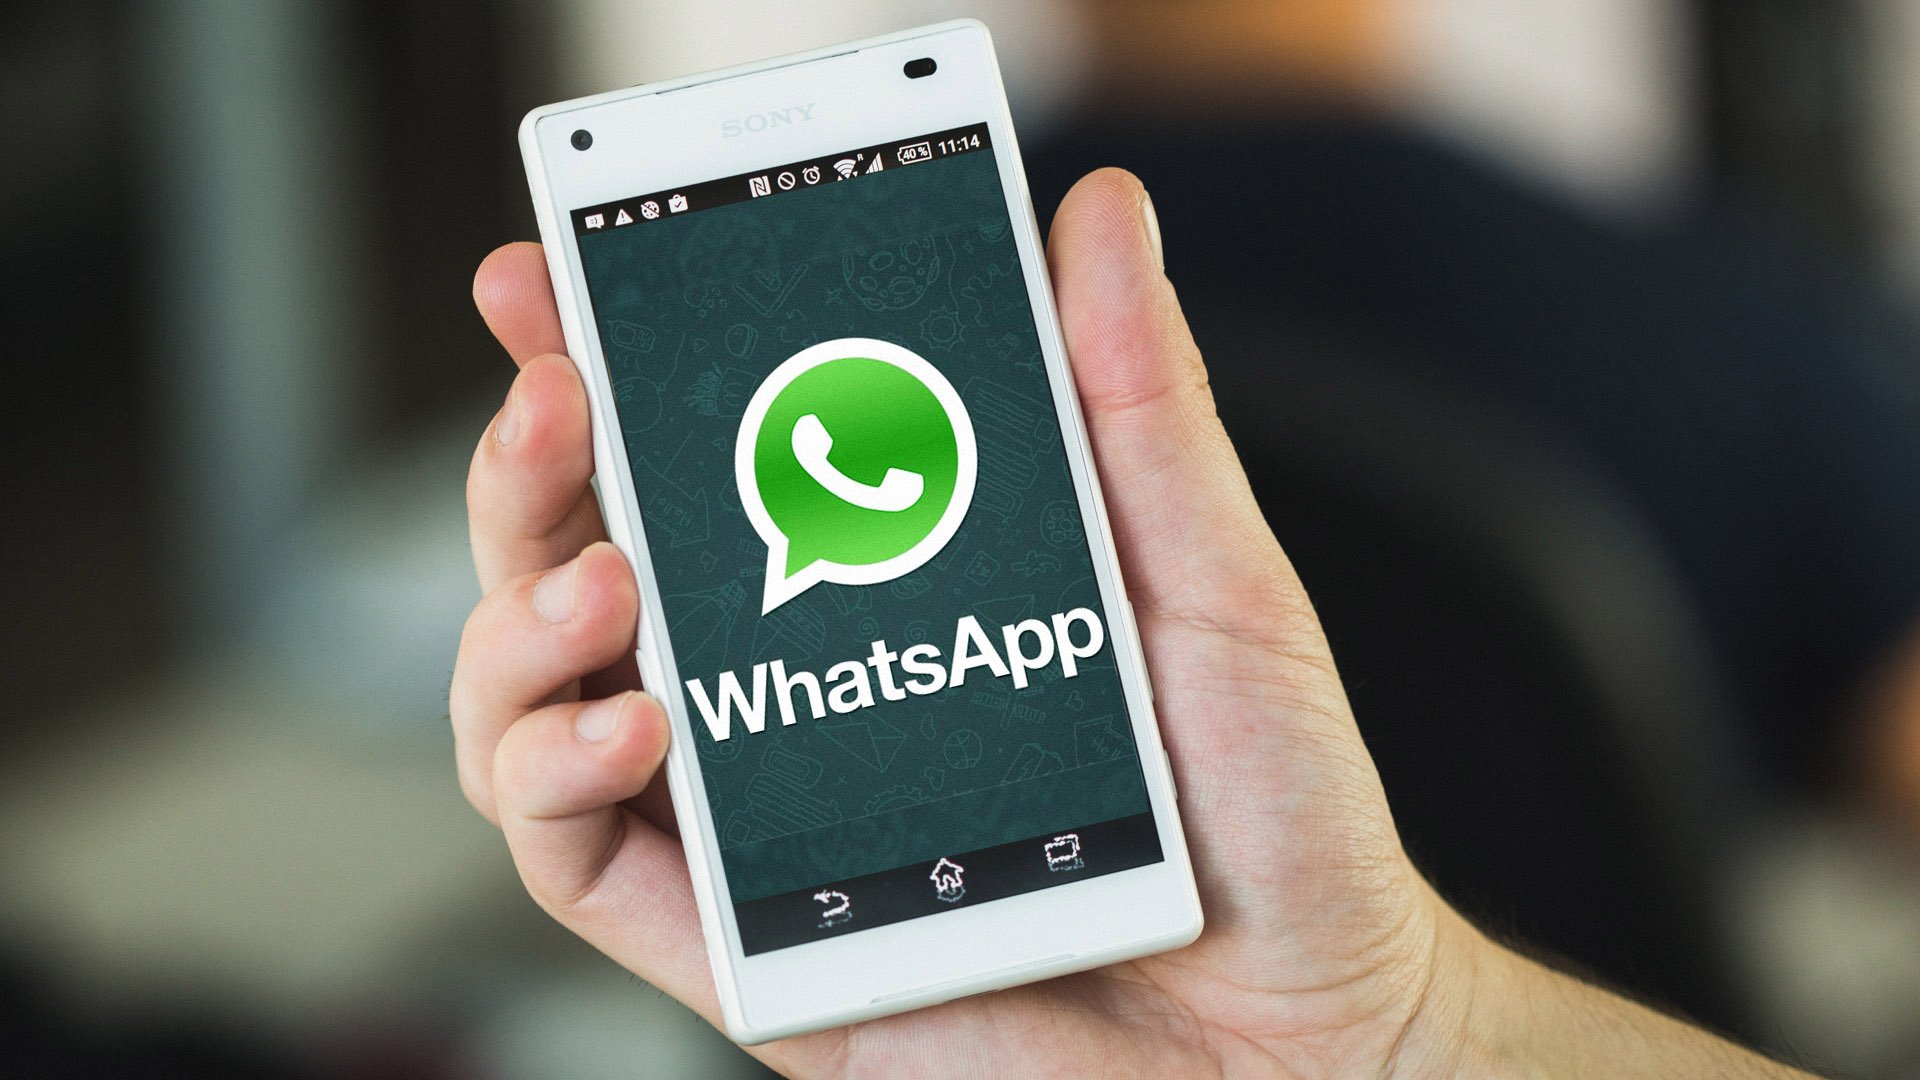 WhatsApp Özel Olarak Yanıtla Özelliği Nedir?